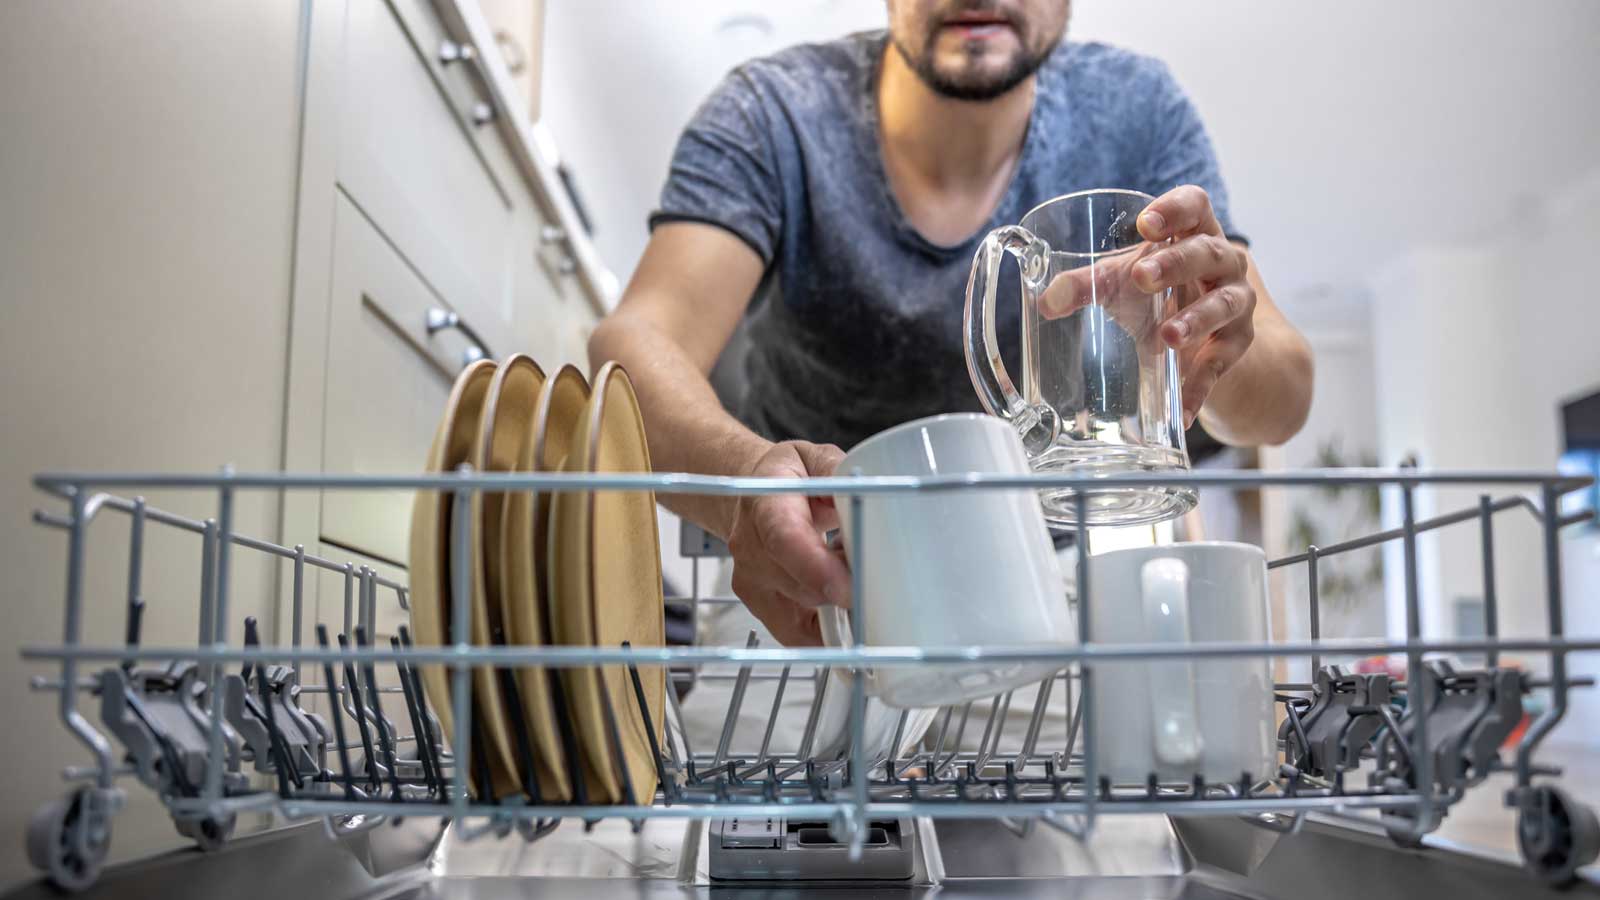 Ποιο είναι το Μαγειρικό Σκεύος που Απαγορεύεται Δια Ροπάλου Να Βάλεις στο Πλυντήριο Πιάτων